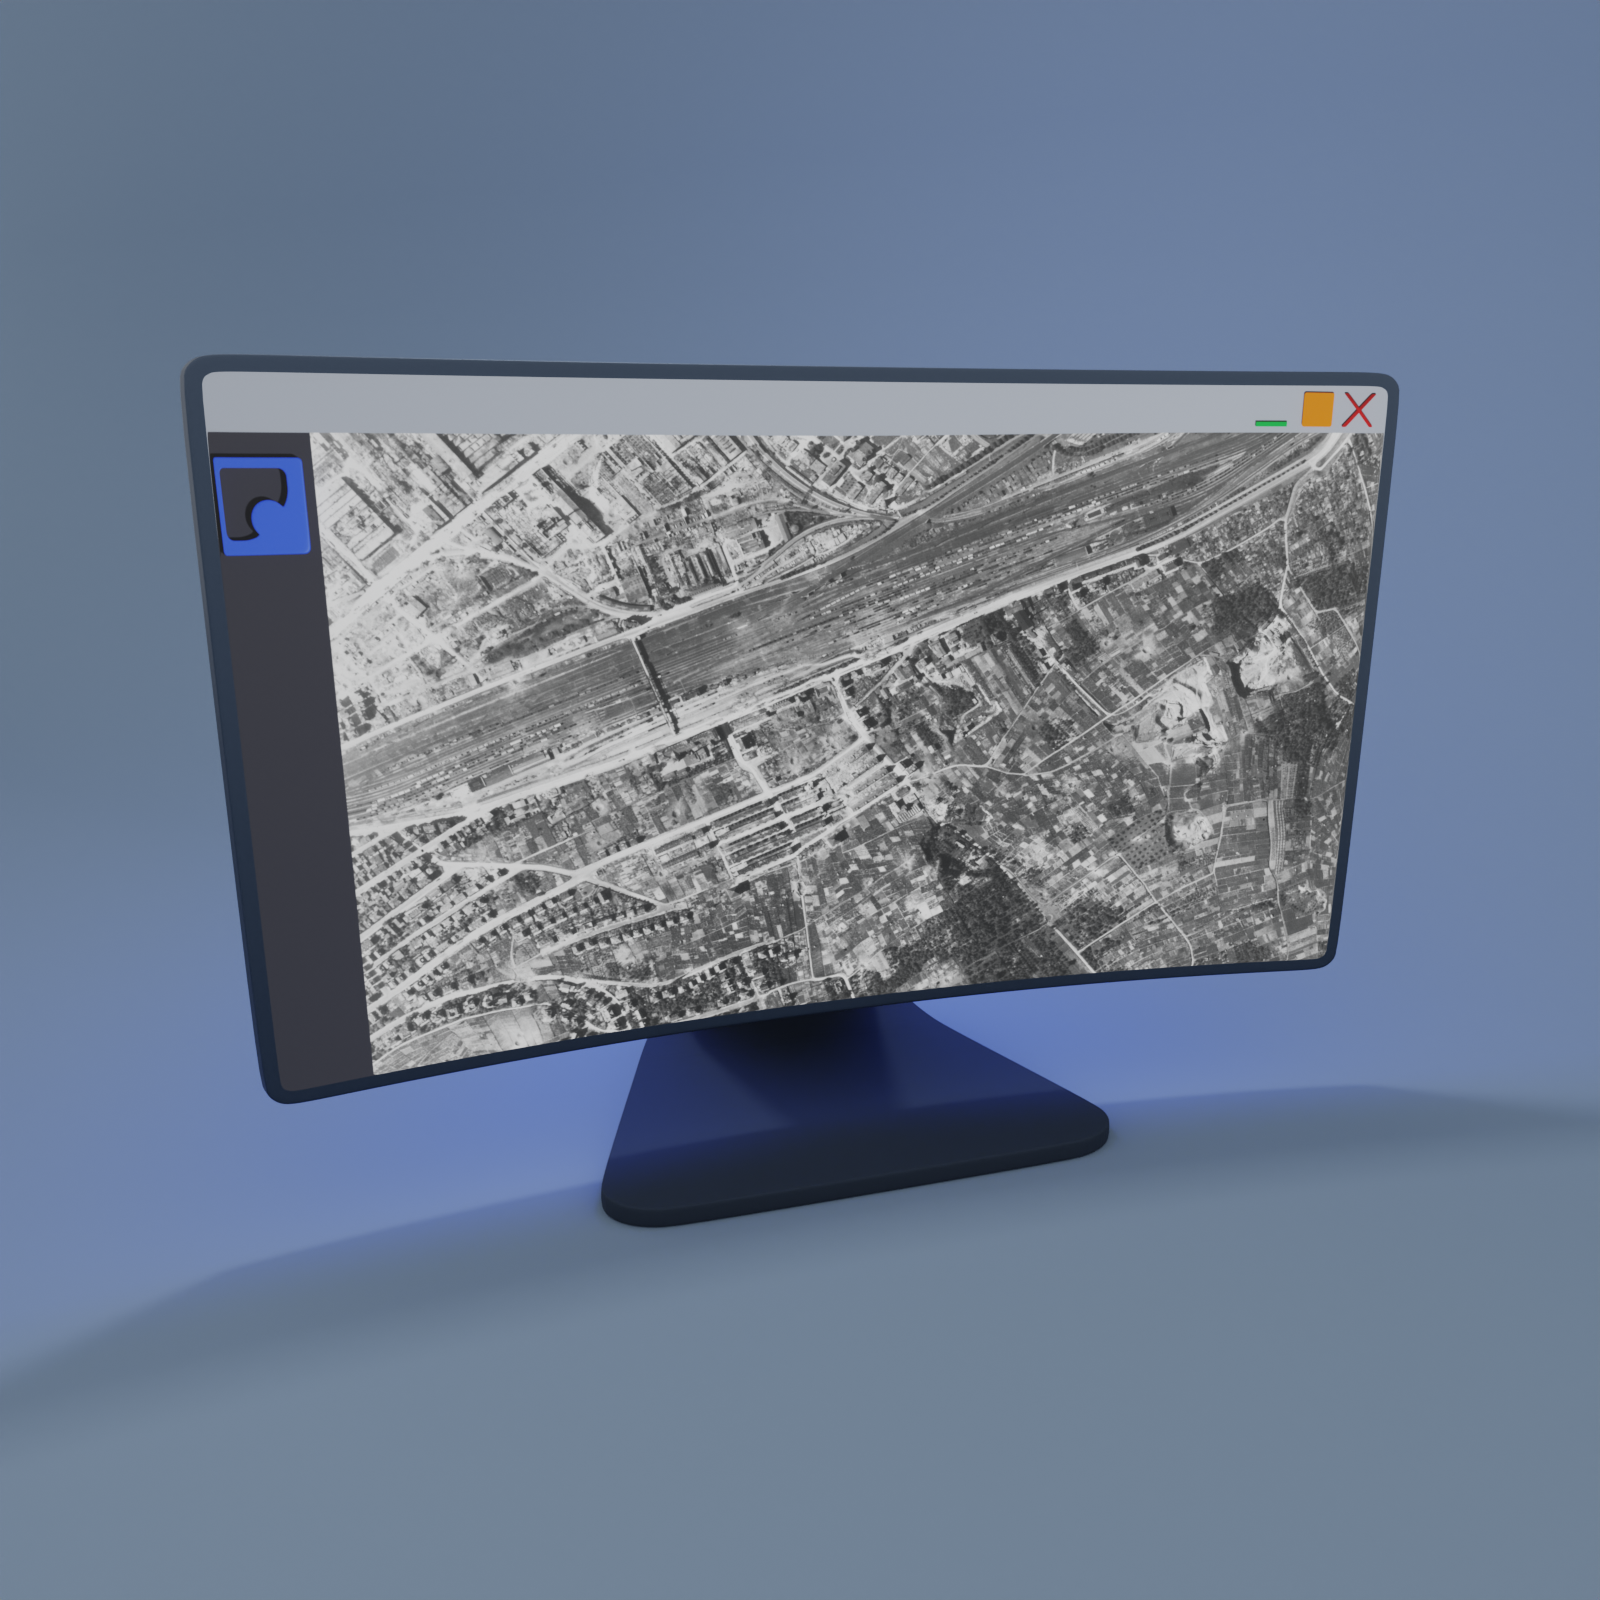 Monitor mit einem historischen Luftbild aus dem Archiv auf einem blauen Hinter- und Untergrund.